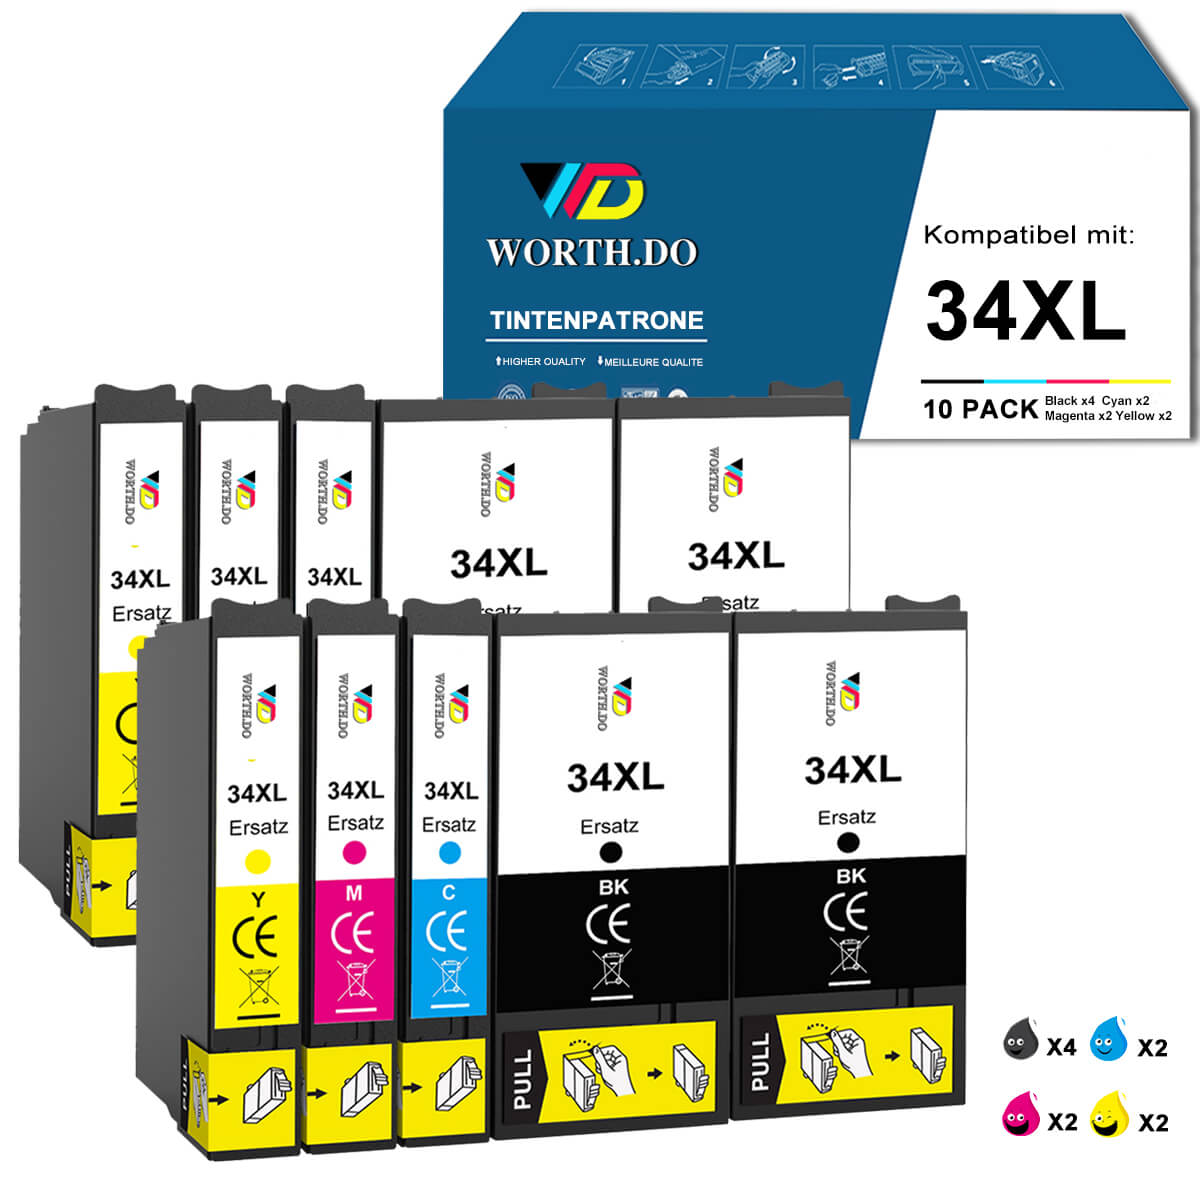    worthdo-kompatible-Epson-Druckerpatronen-34xl-value-pack